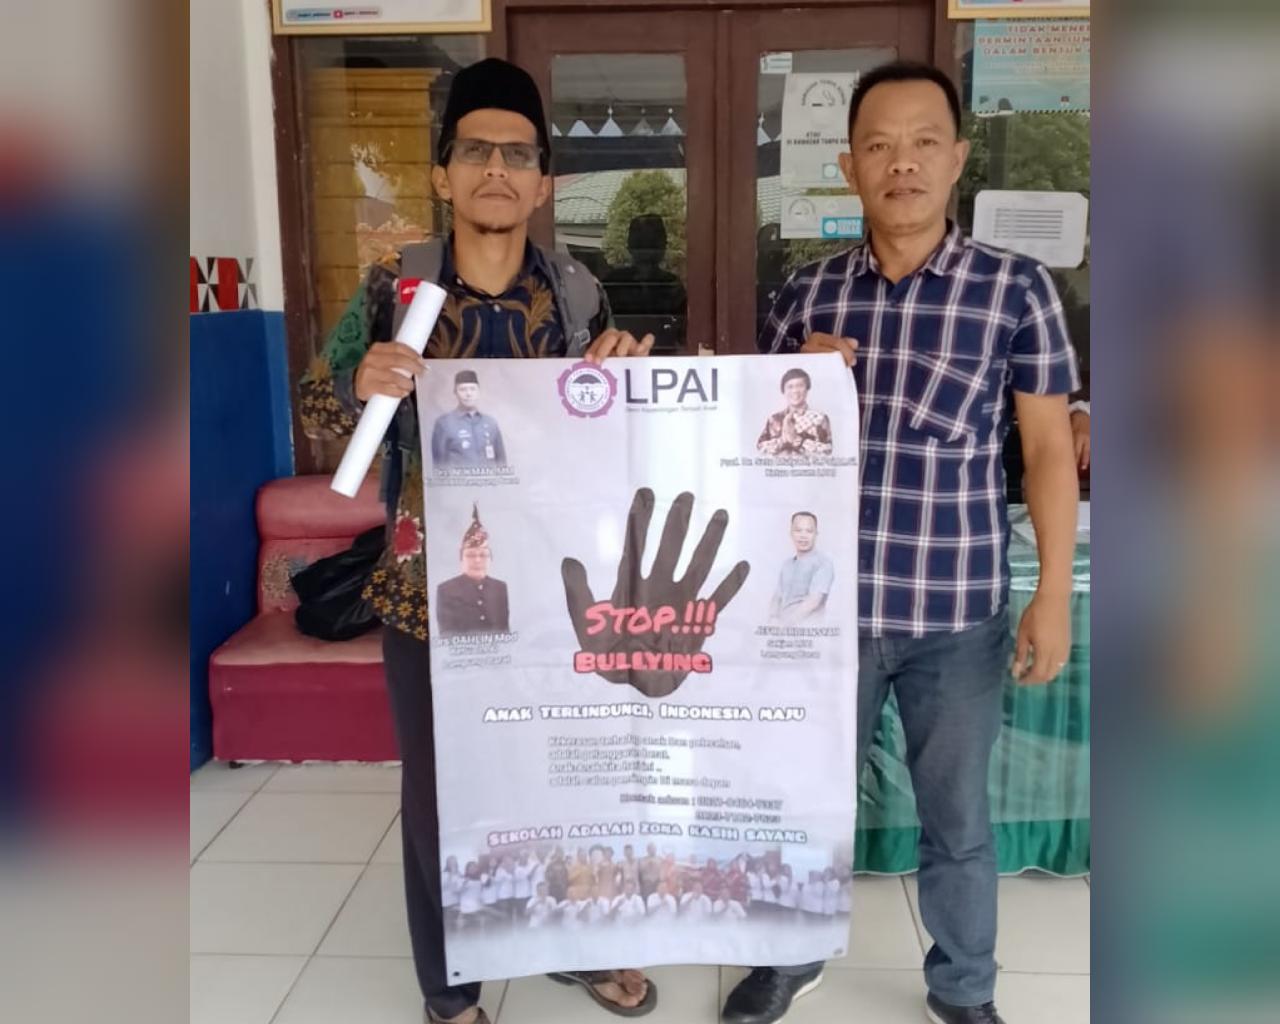 Cegah Bullying, LPAI Lampung Barat Gelar Sosialisasi di SMPN 1 Sekincau